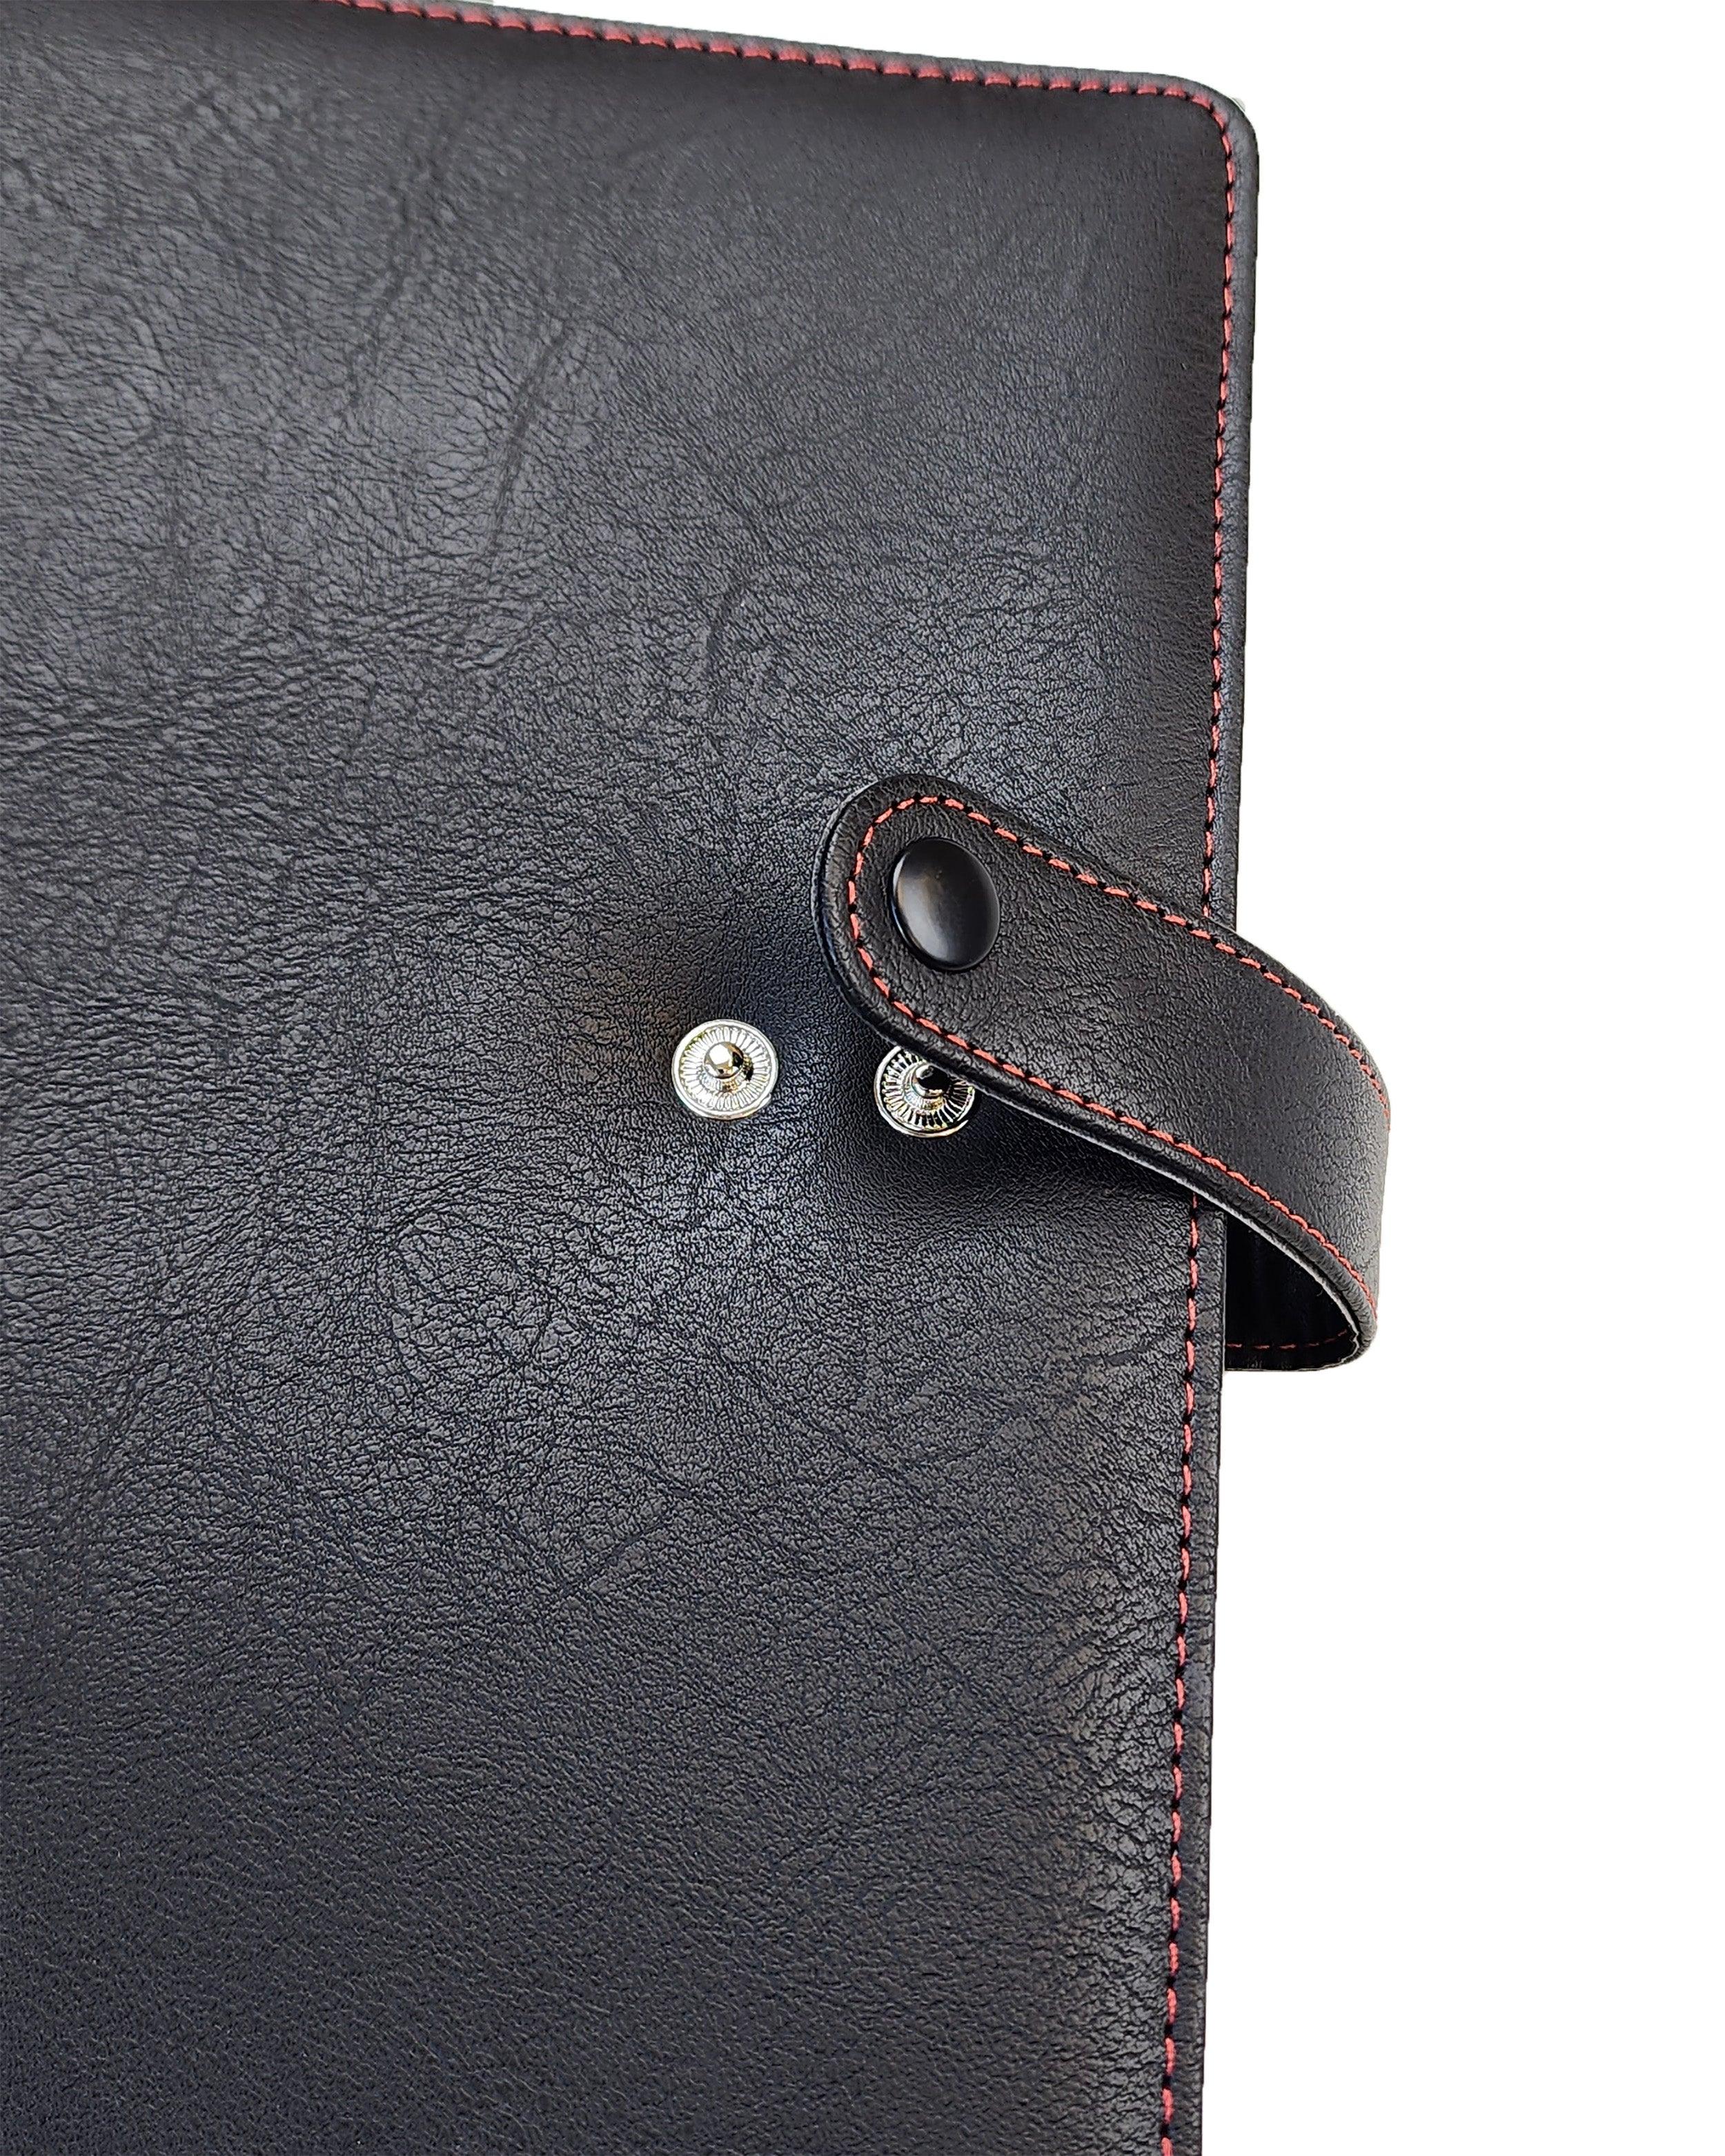 Planner binder made of genuine leather. Pockets inside. Buy - Inspire Uplift